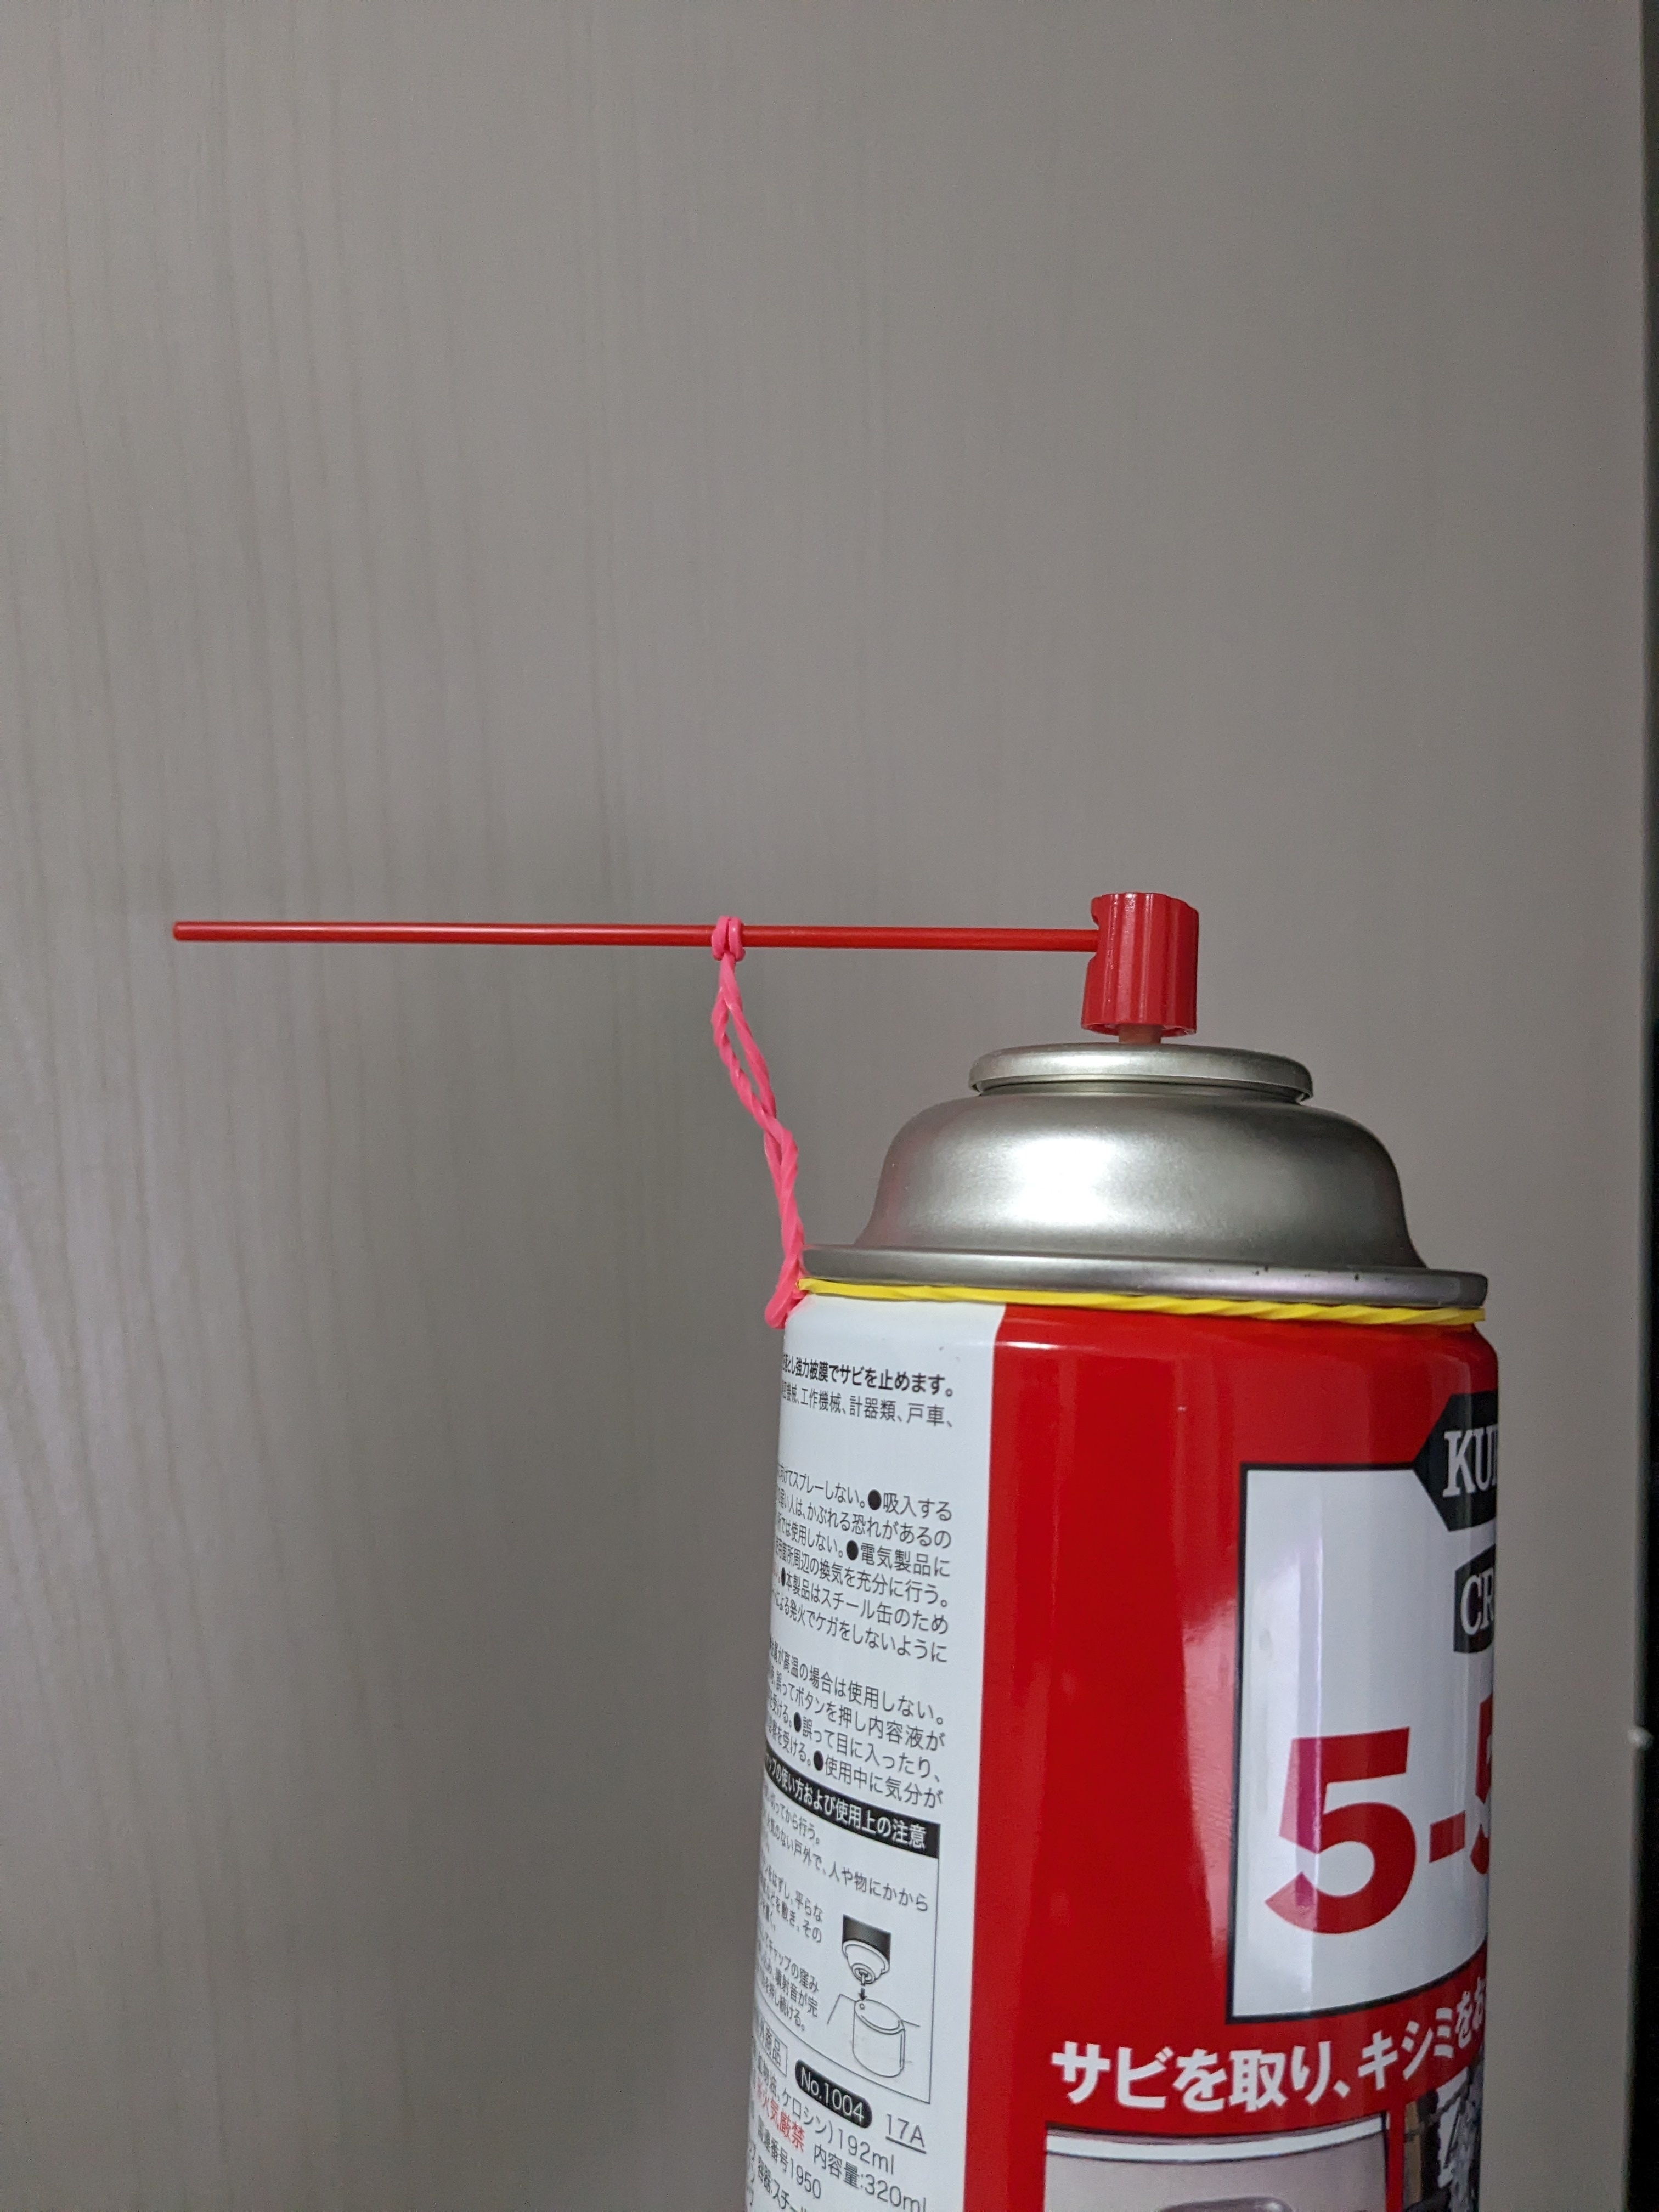 スプレー缶に紐が結び付けられている。